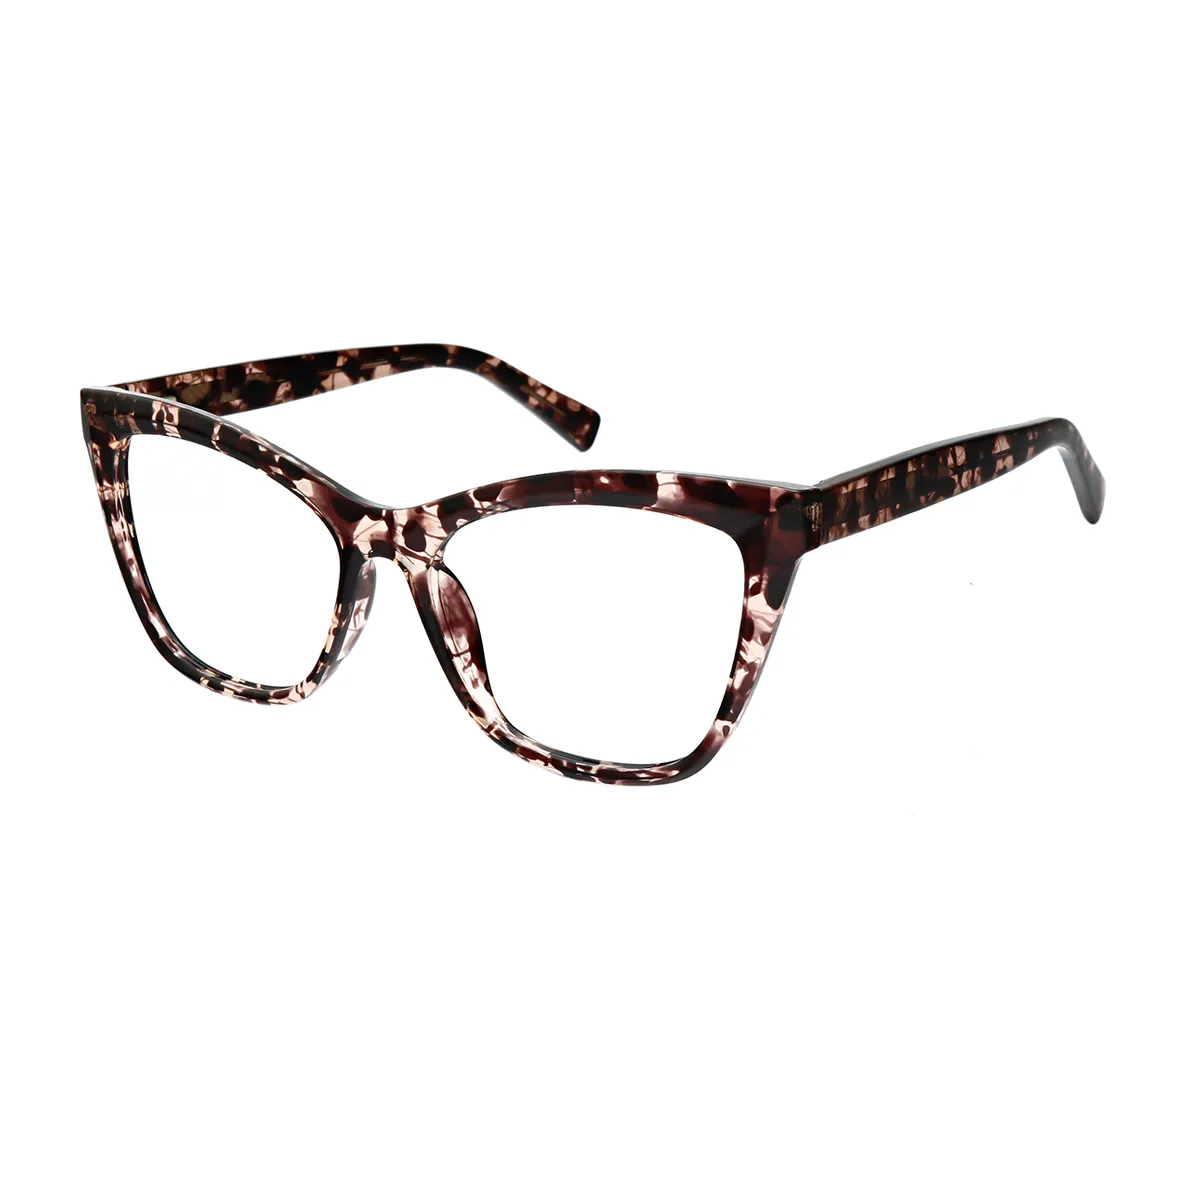 Dame - Cat-eye Tortoiseshell Glasses for Women - EFE